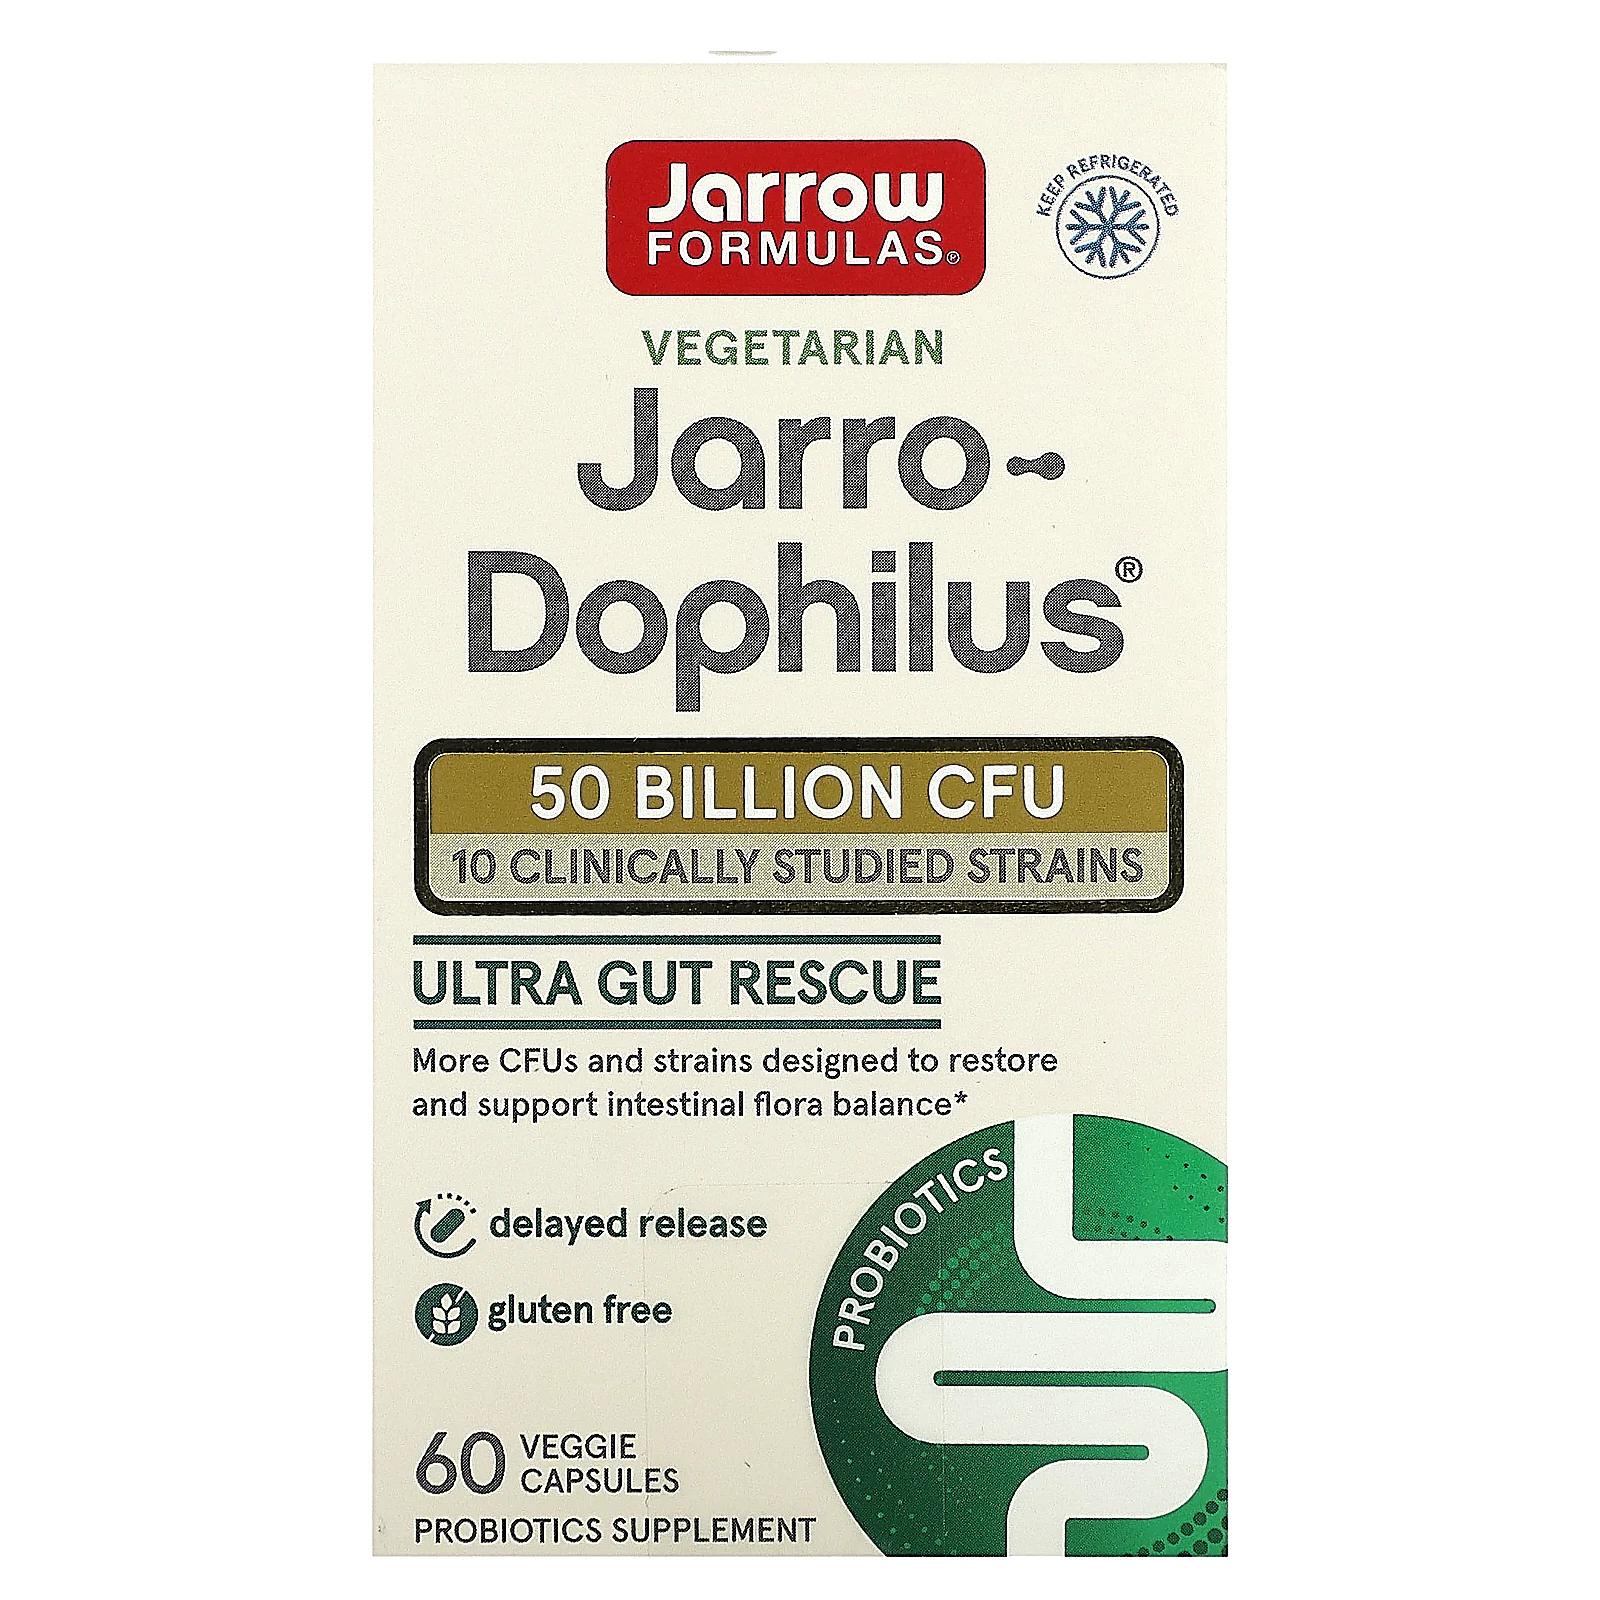 пробиотики для детей jarrow formulas jarro dophilus baby 3 billion cfu 60 г Jarrow Formulas Пробиотик Ultra Jarro-Dophilus 60 вегетарианских капсул (Ice)